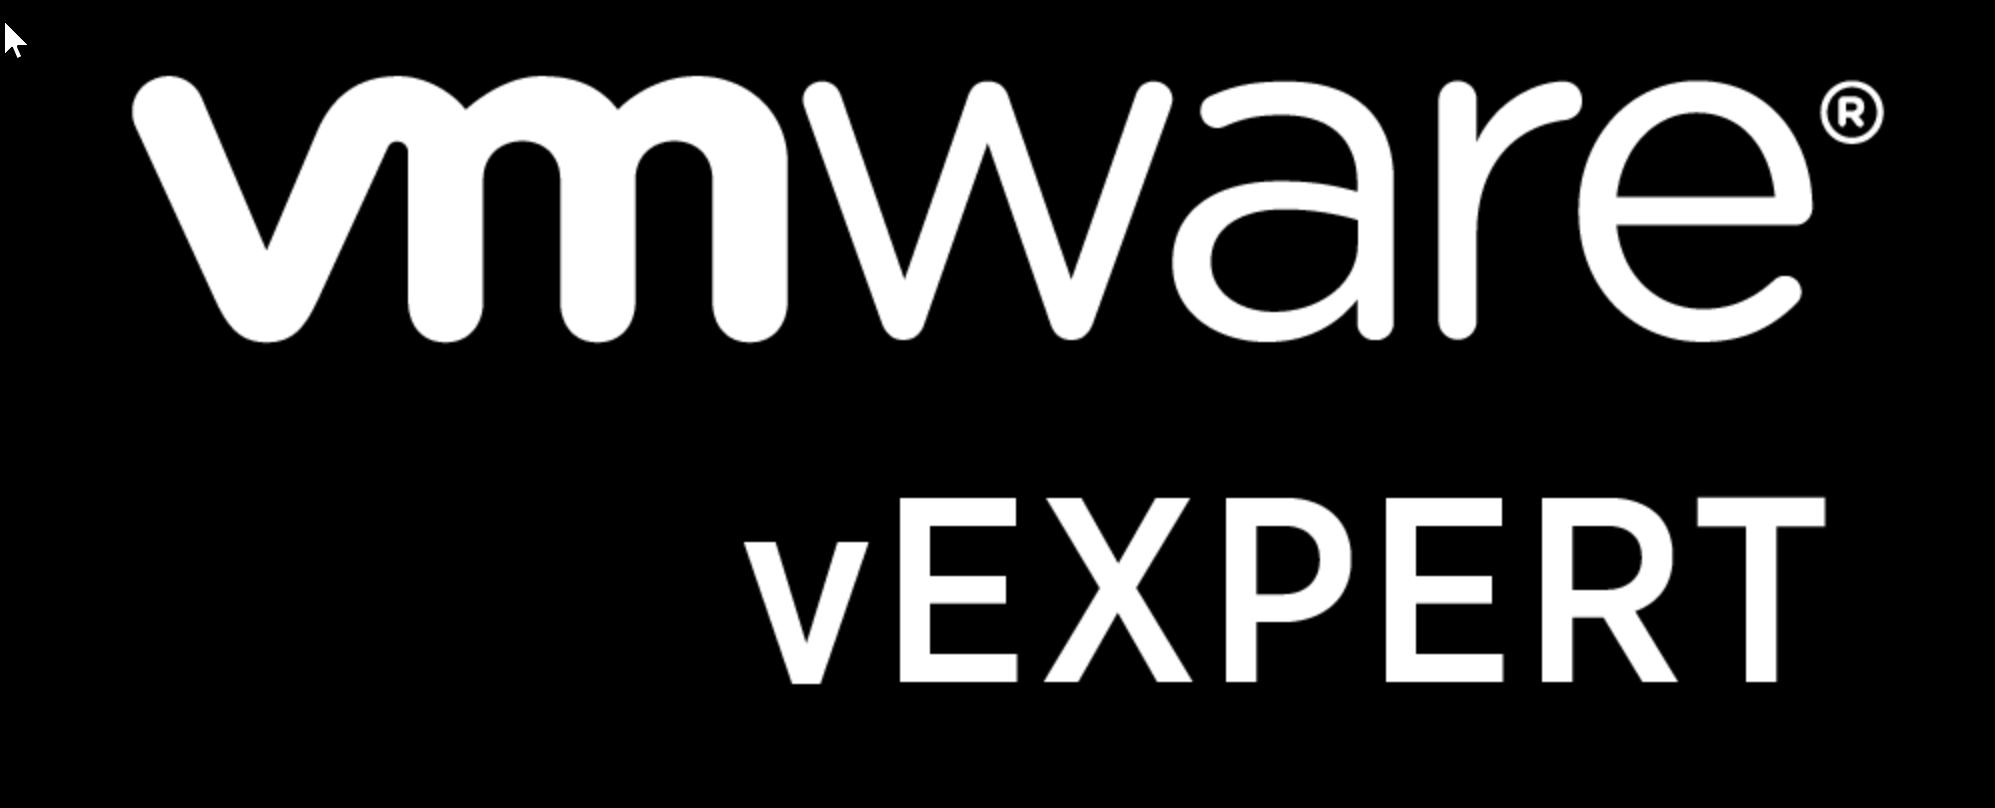 VMware vExpert 2018